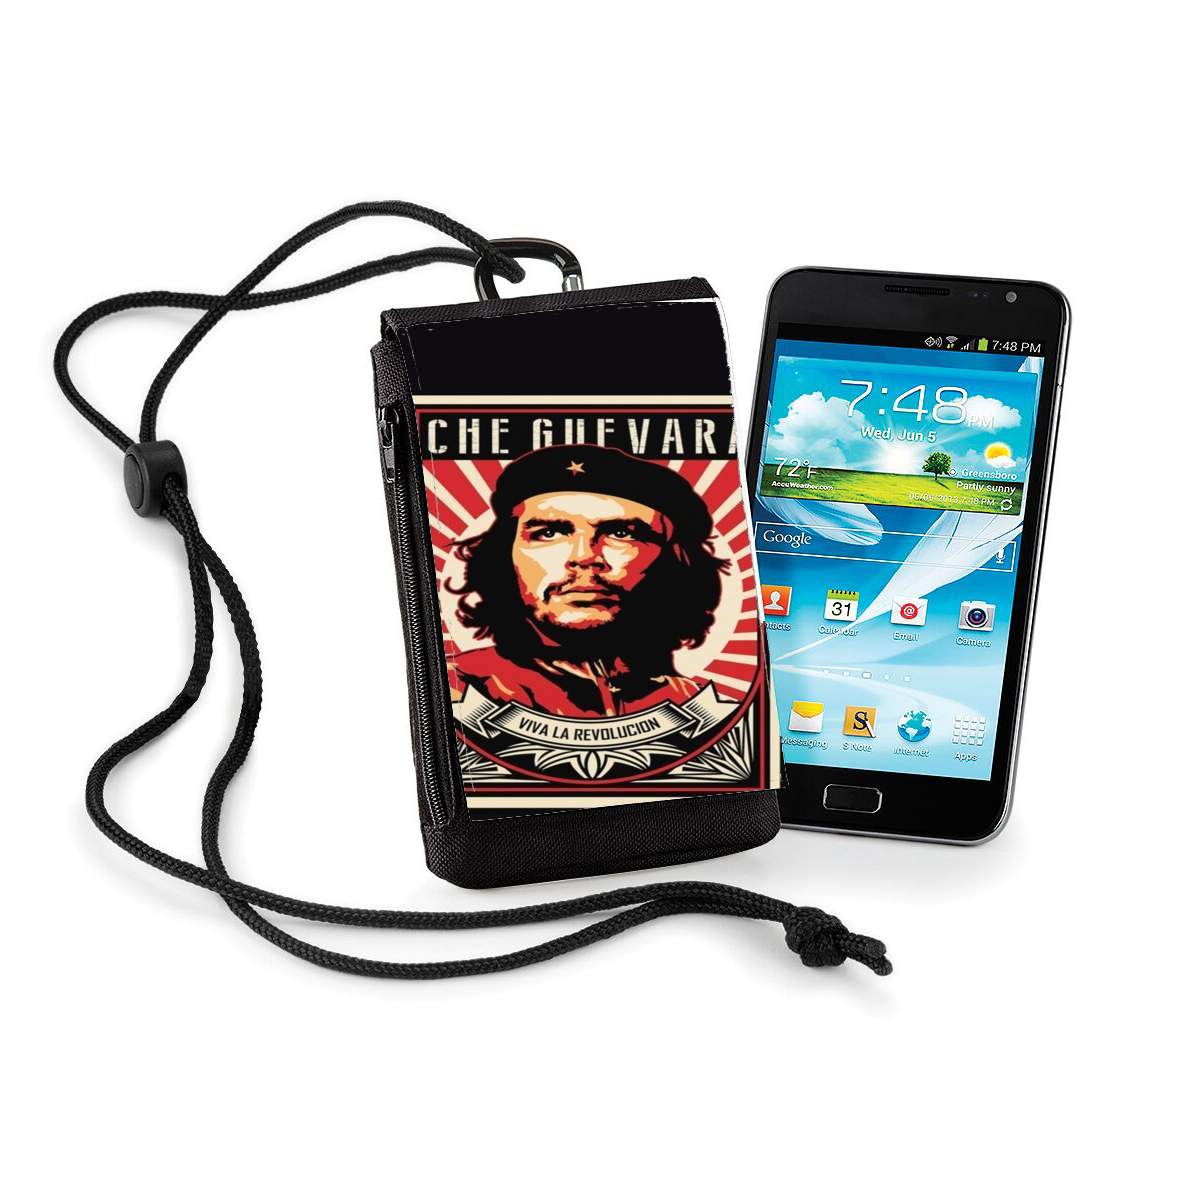 Pochette de téléphone - Taille normal pour Che Guevara Viva Revolution